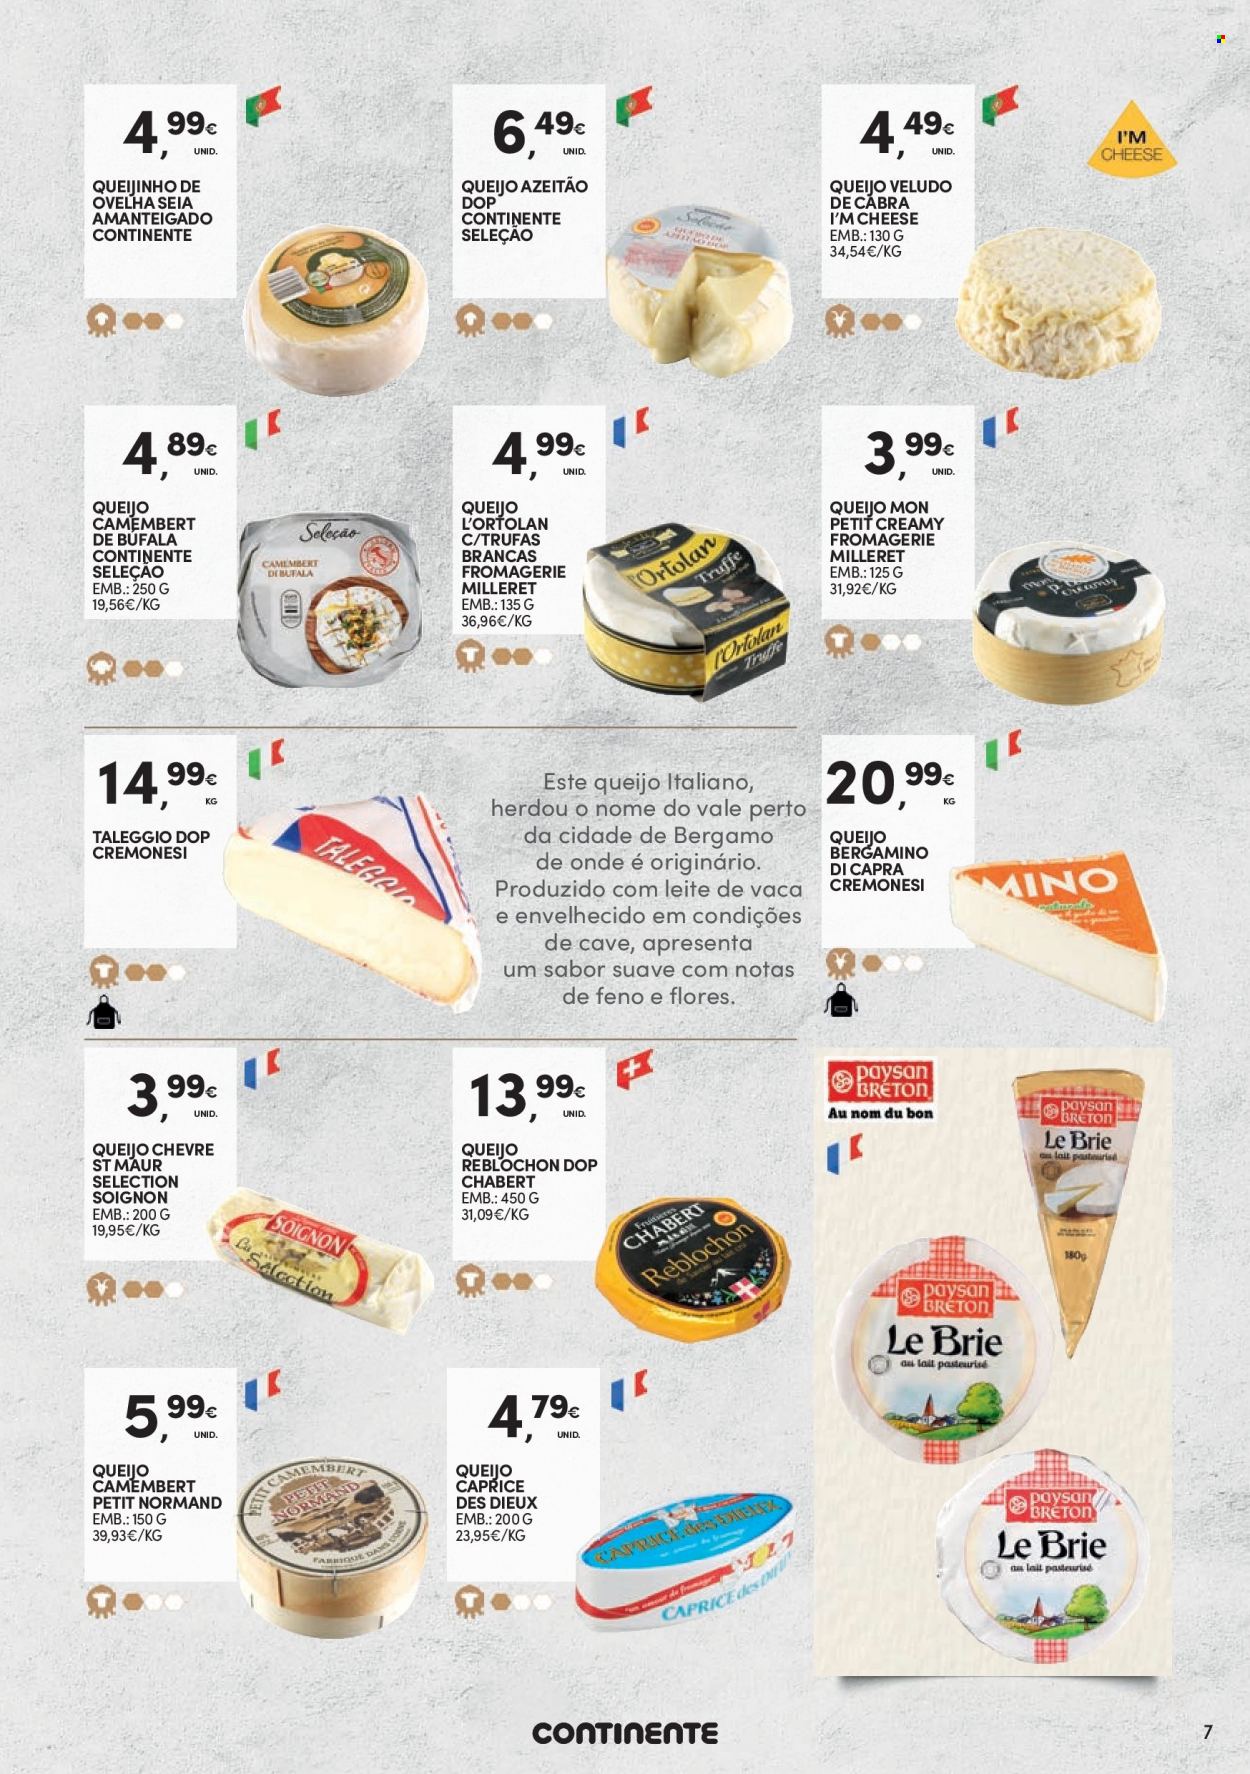 thumbnail - Folheto Continente - 19.7.2022 - 28.8.2022 - Produtos em promoção - queijo, reblochon, camembert, trufas. Página 7.